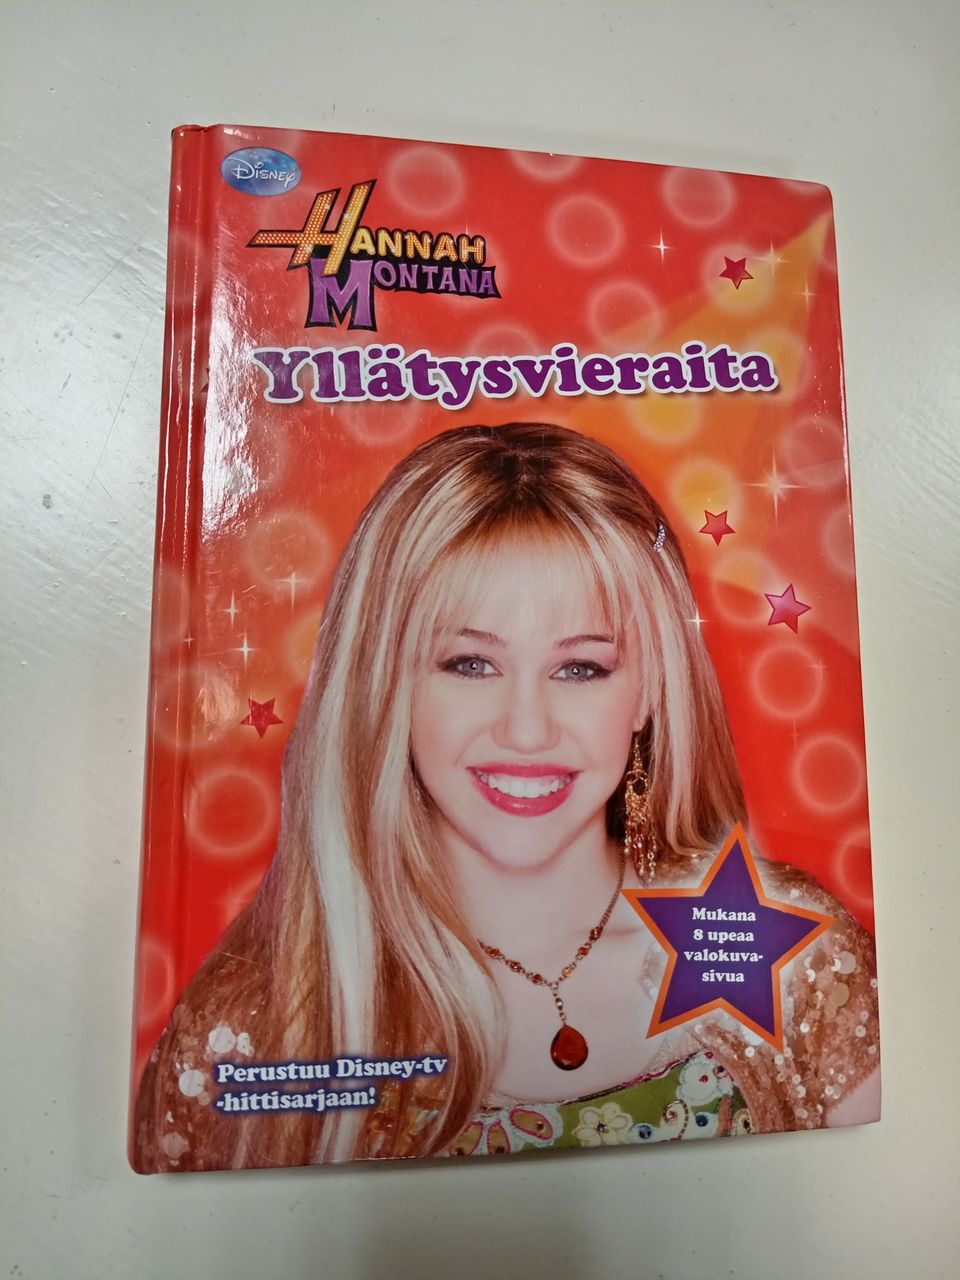 Hannah Montana Yllätysvieraita -kirja